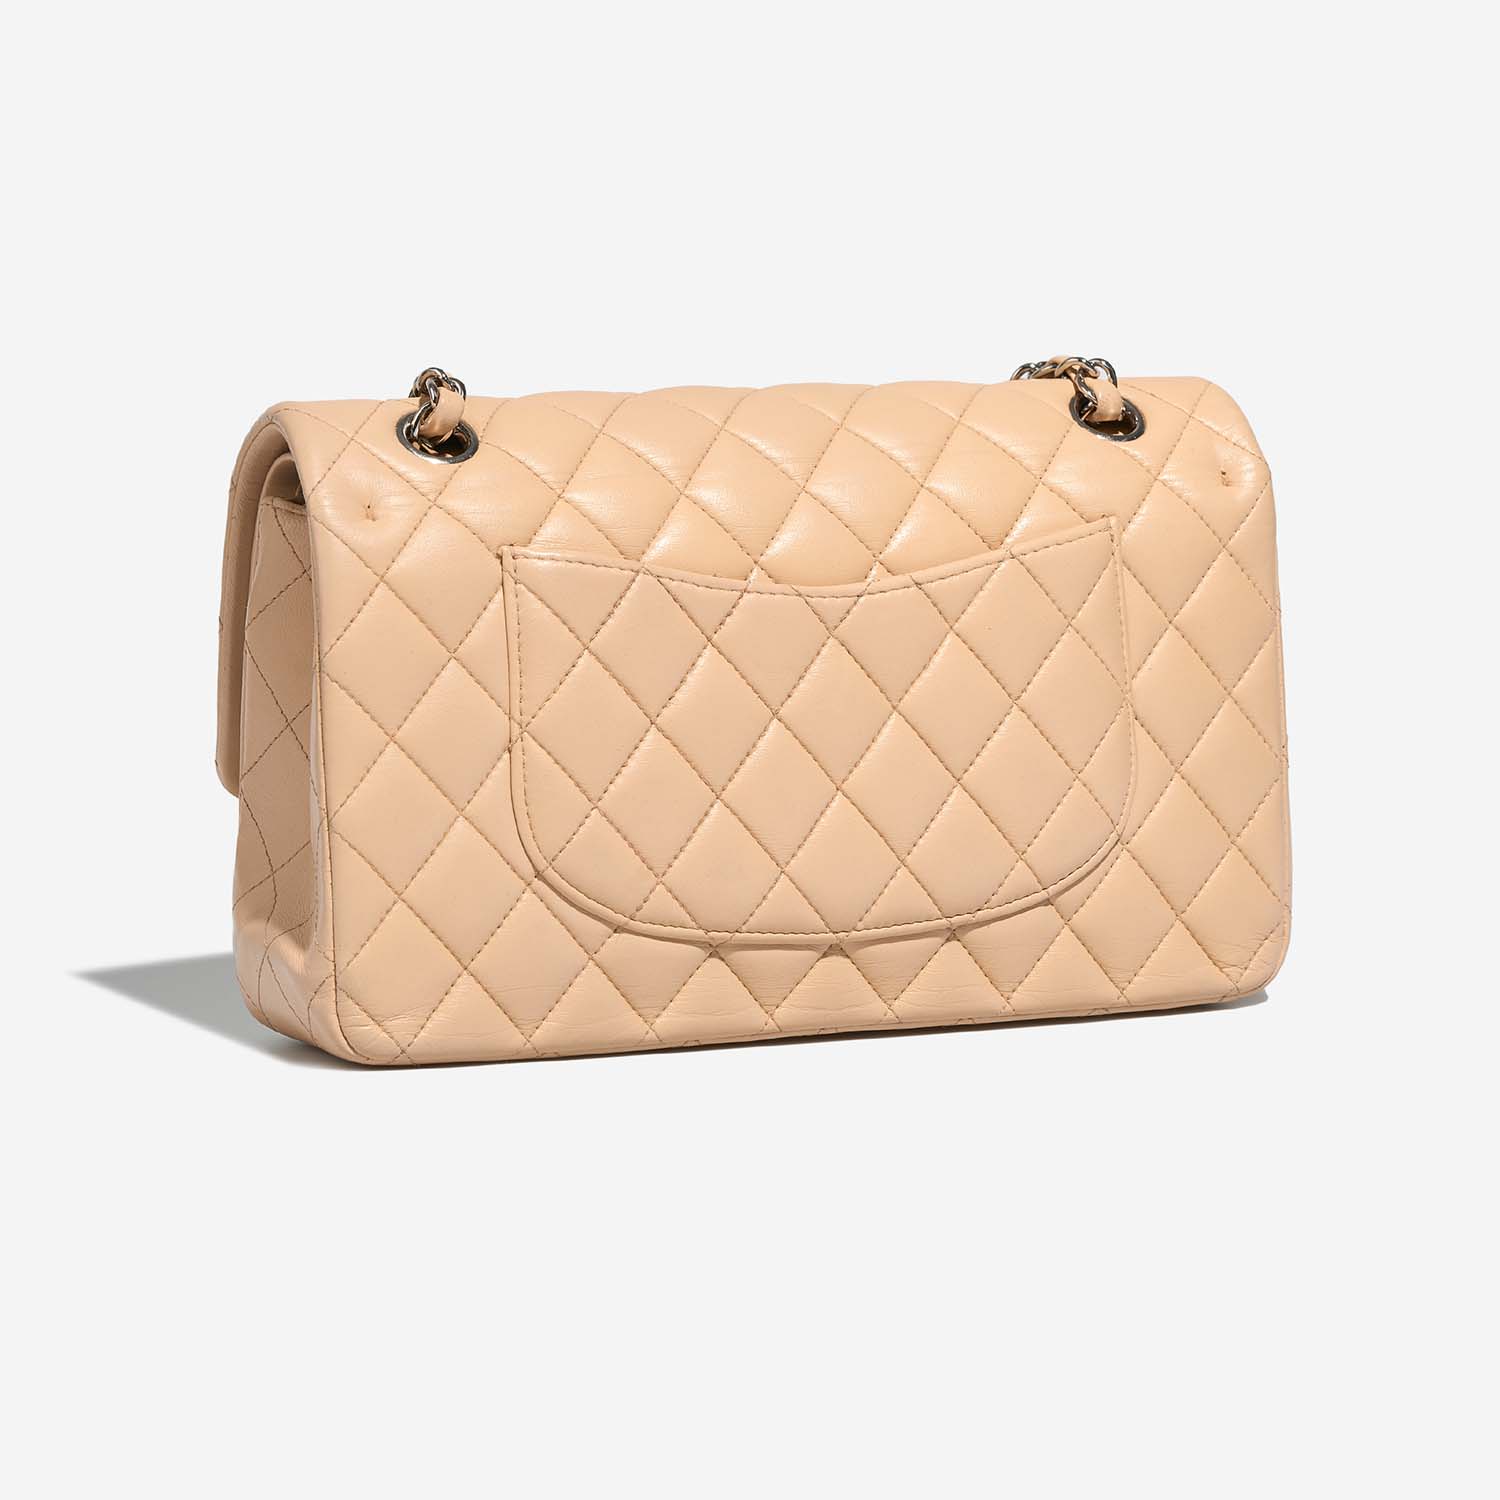 Chanel Timeless Medium Beige Side Back | Sell your designer bag on Saclab.com